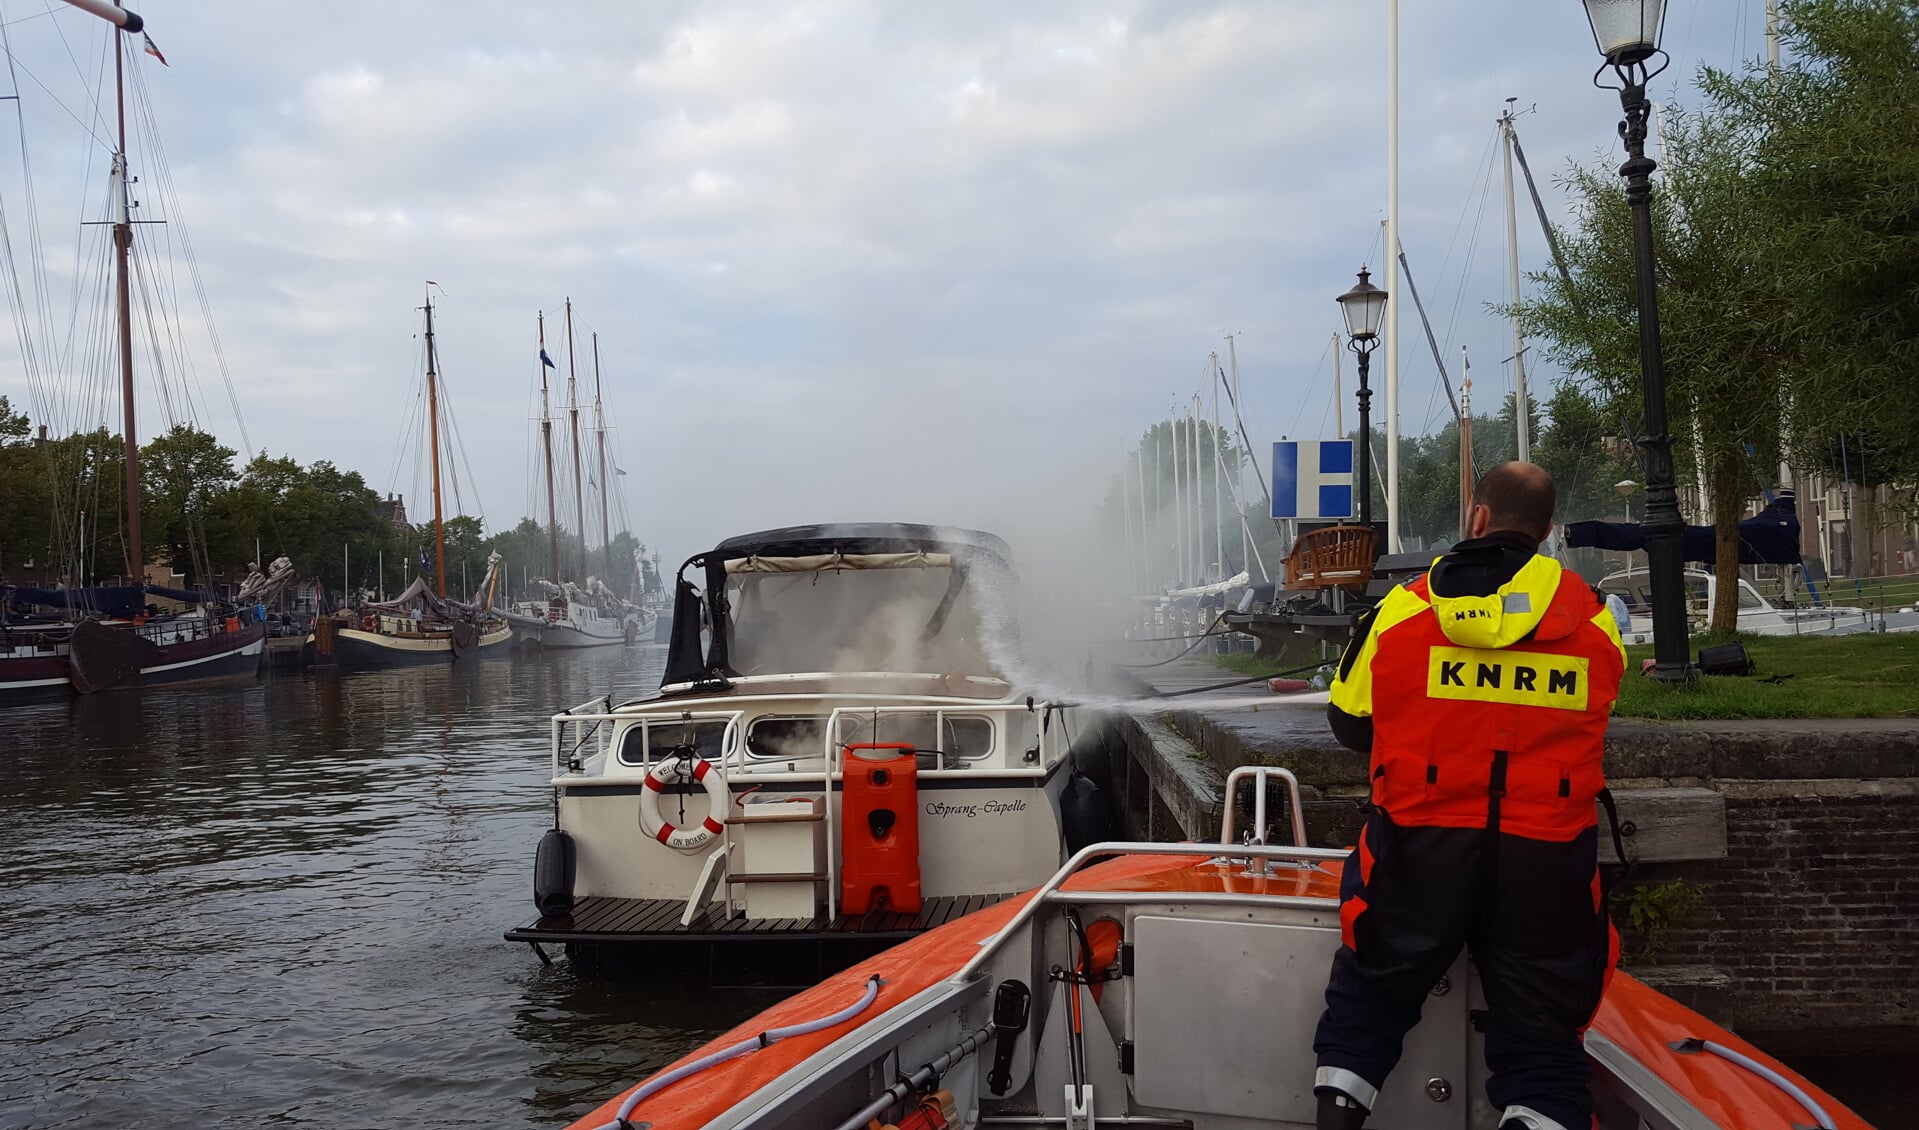 De brand op de boot werd tijdig door de bemanning van de Bernardine geblust. (Foto: aangeleverd)